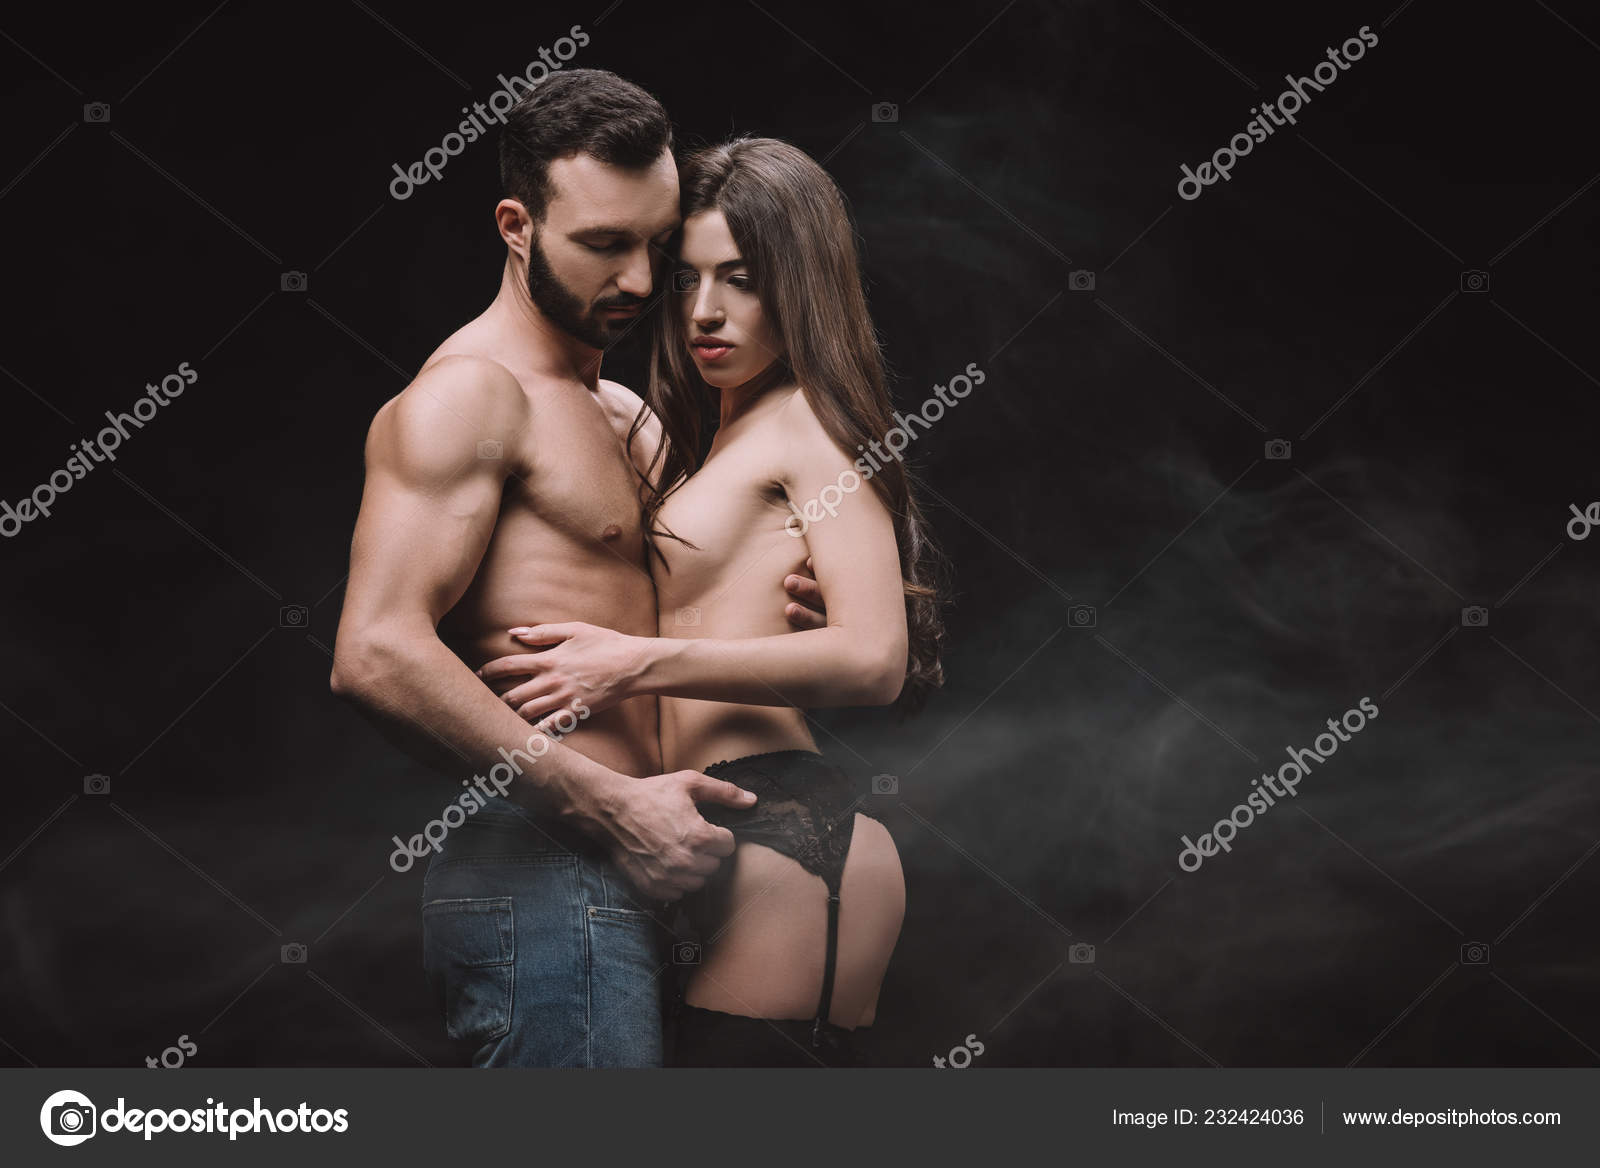 wife and girlfriend boyfriend naked Xxx Pics Hd